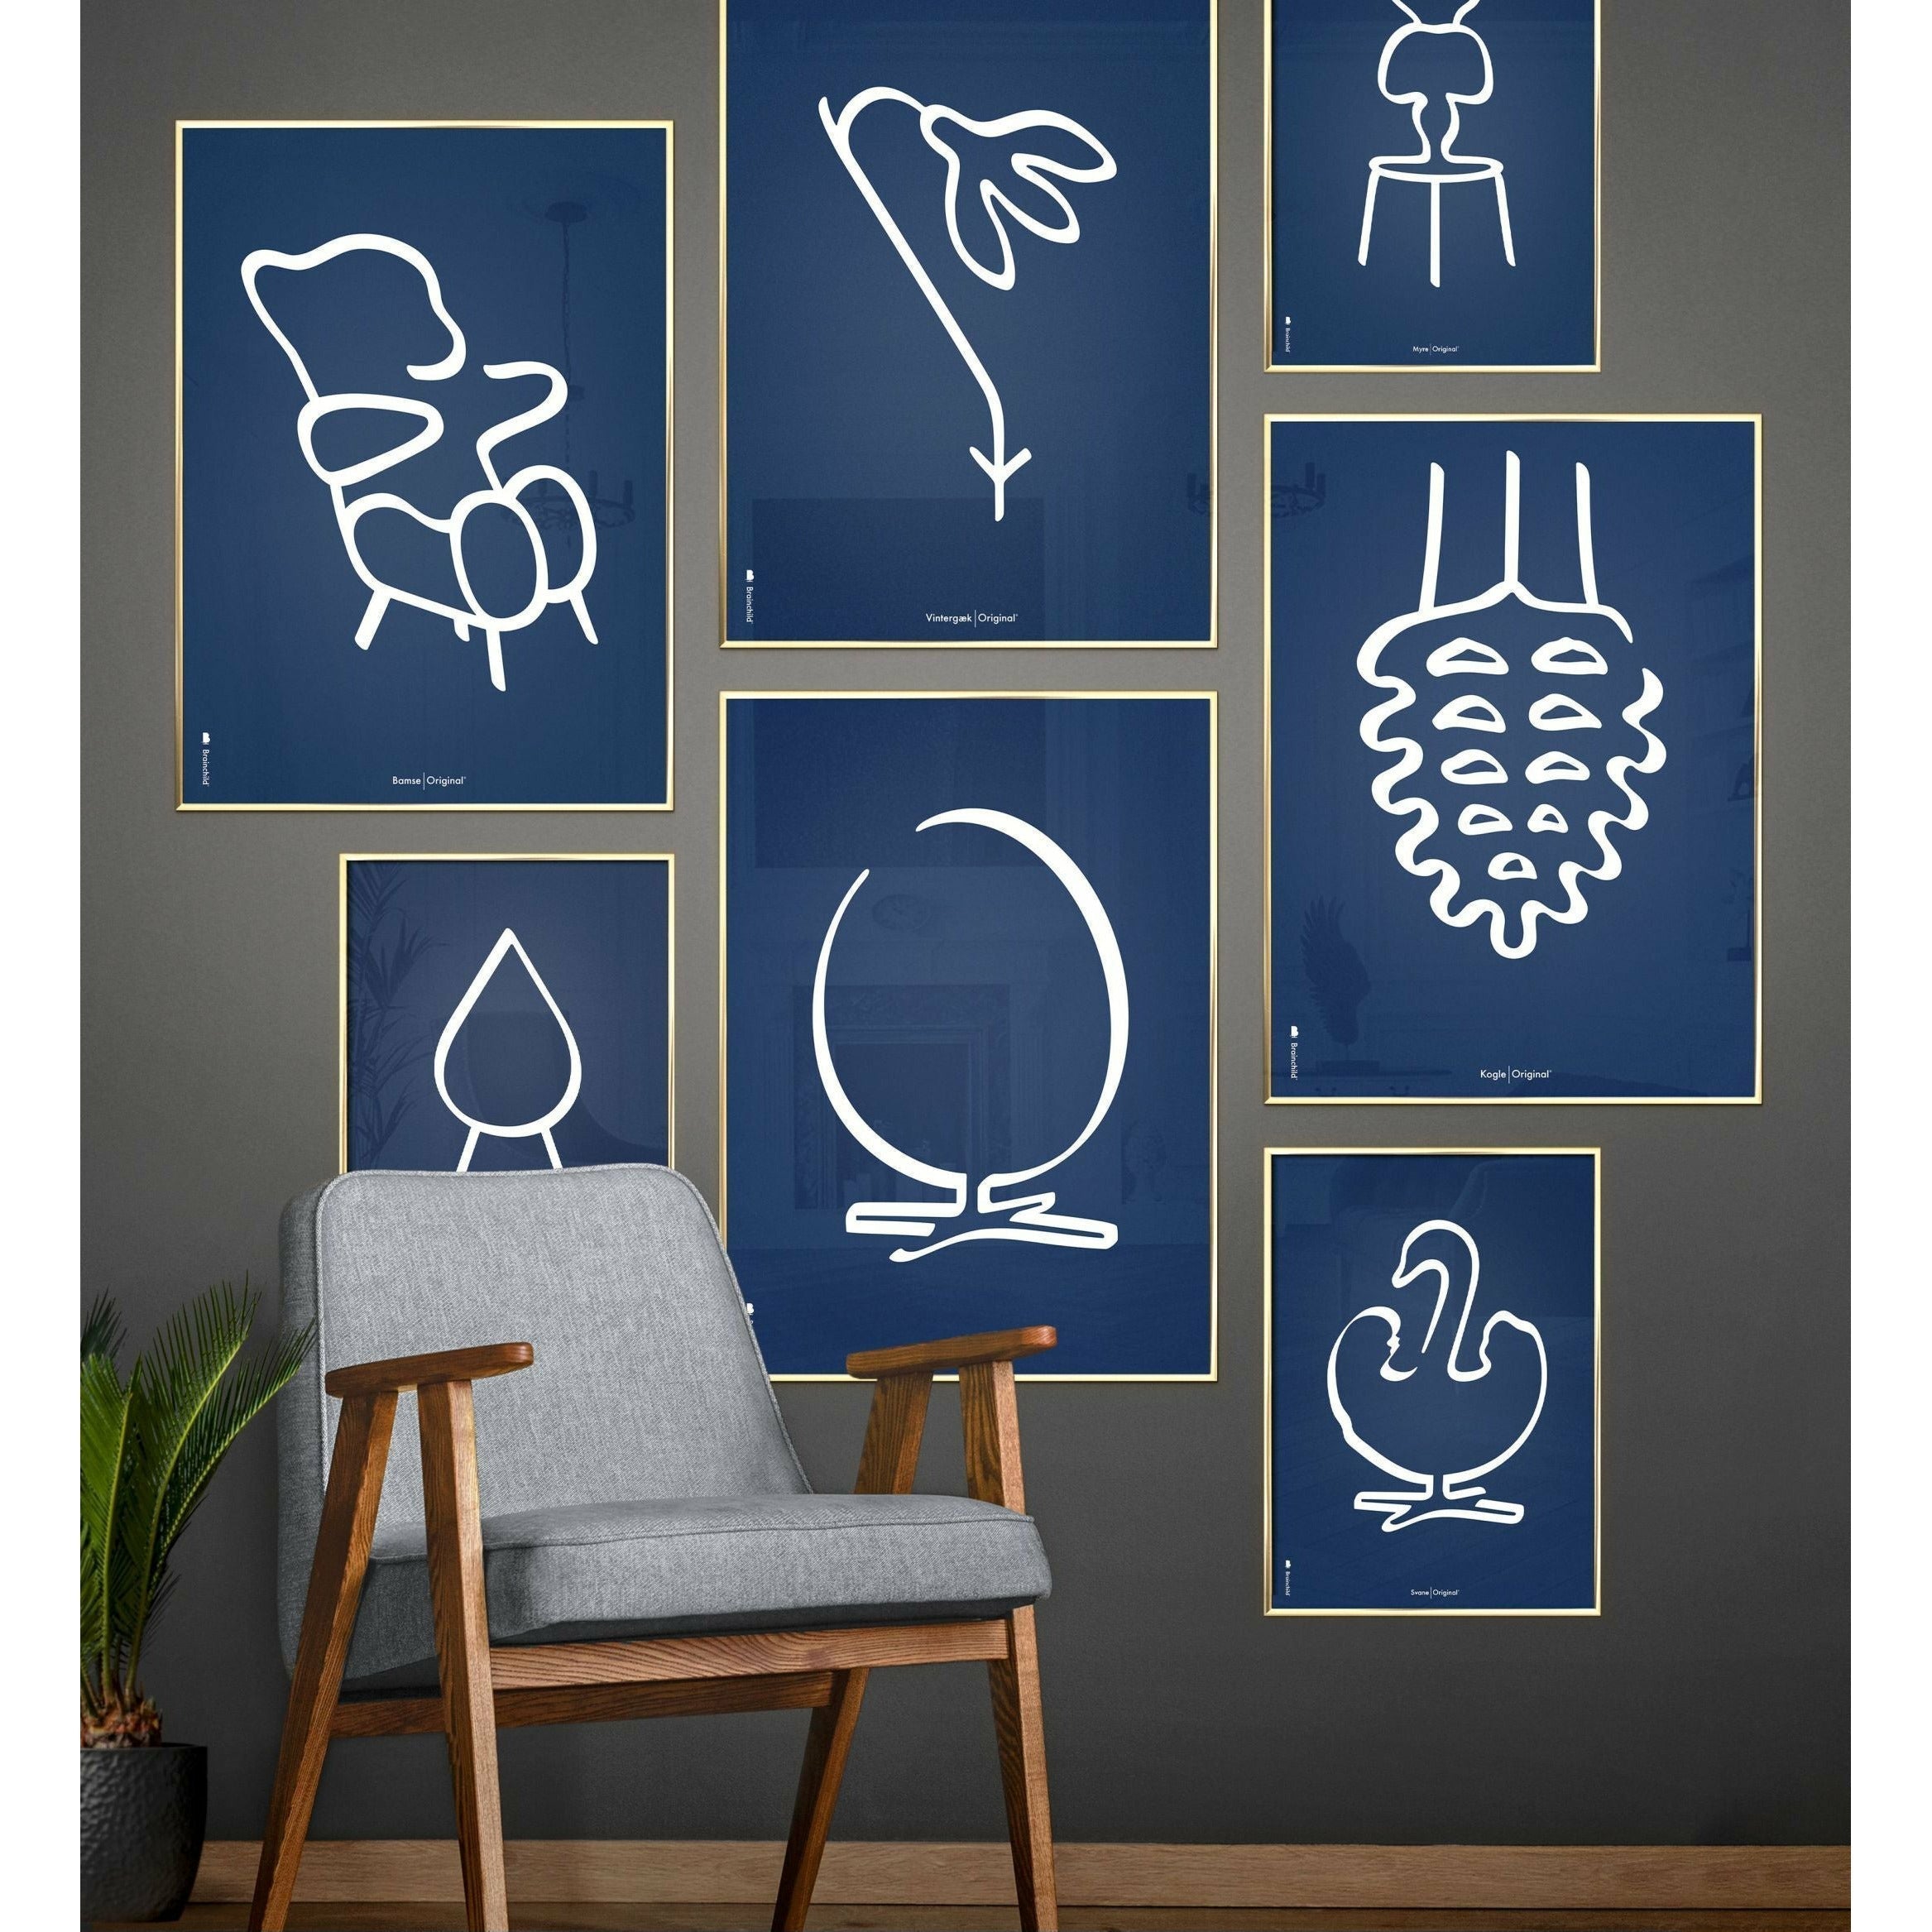 Brainchild Snowdrop Line Poster, Dark Wood Frame A5, Blue Background